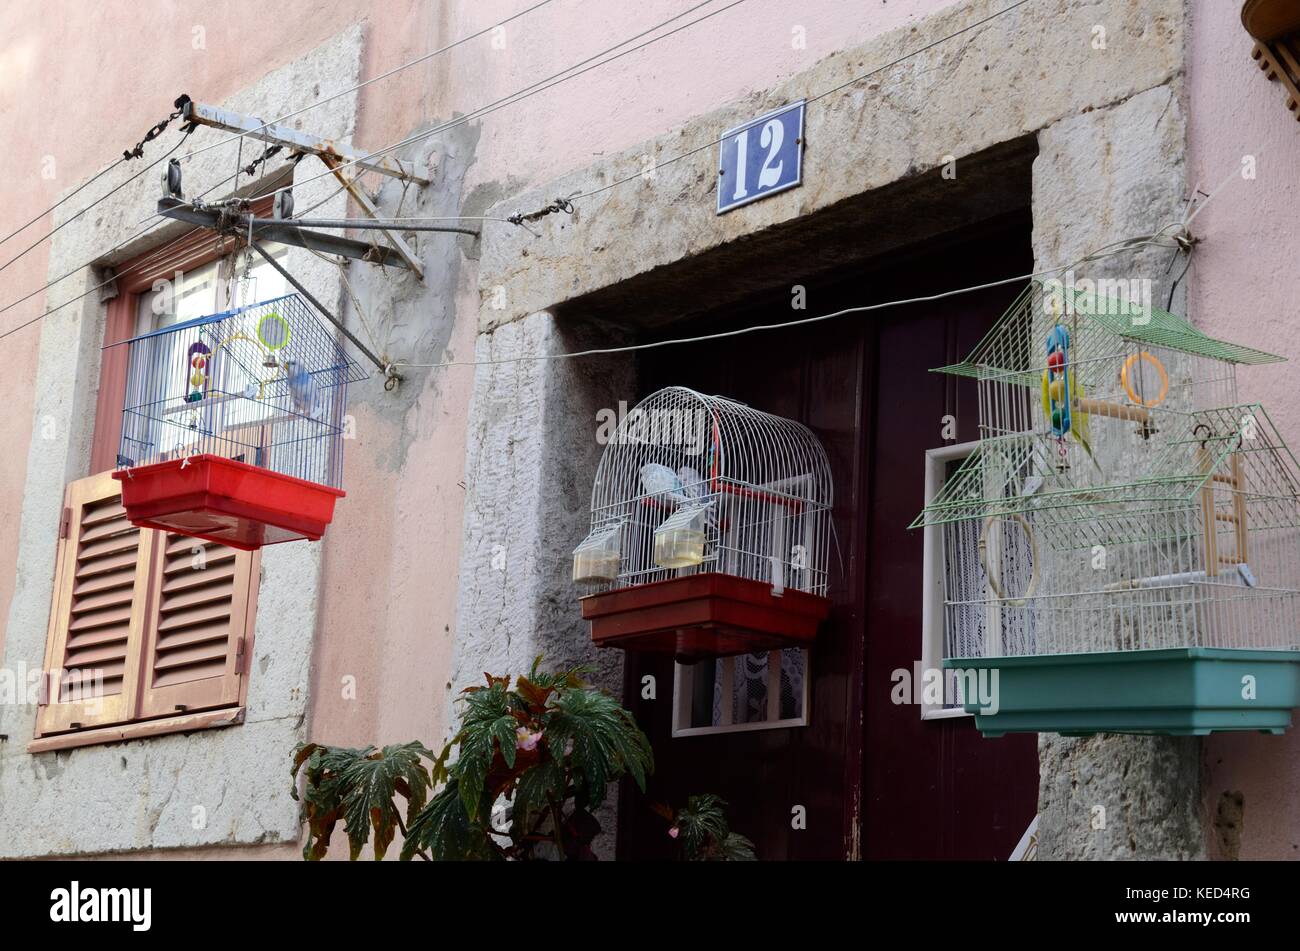 Vogelkäfige an der Wand aufhängen, außerhalb ein Ods-Haus Sintra Portugal  Stockfotografie - Alamy